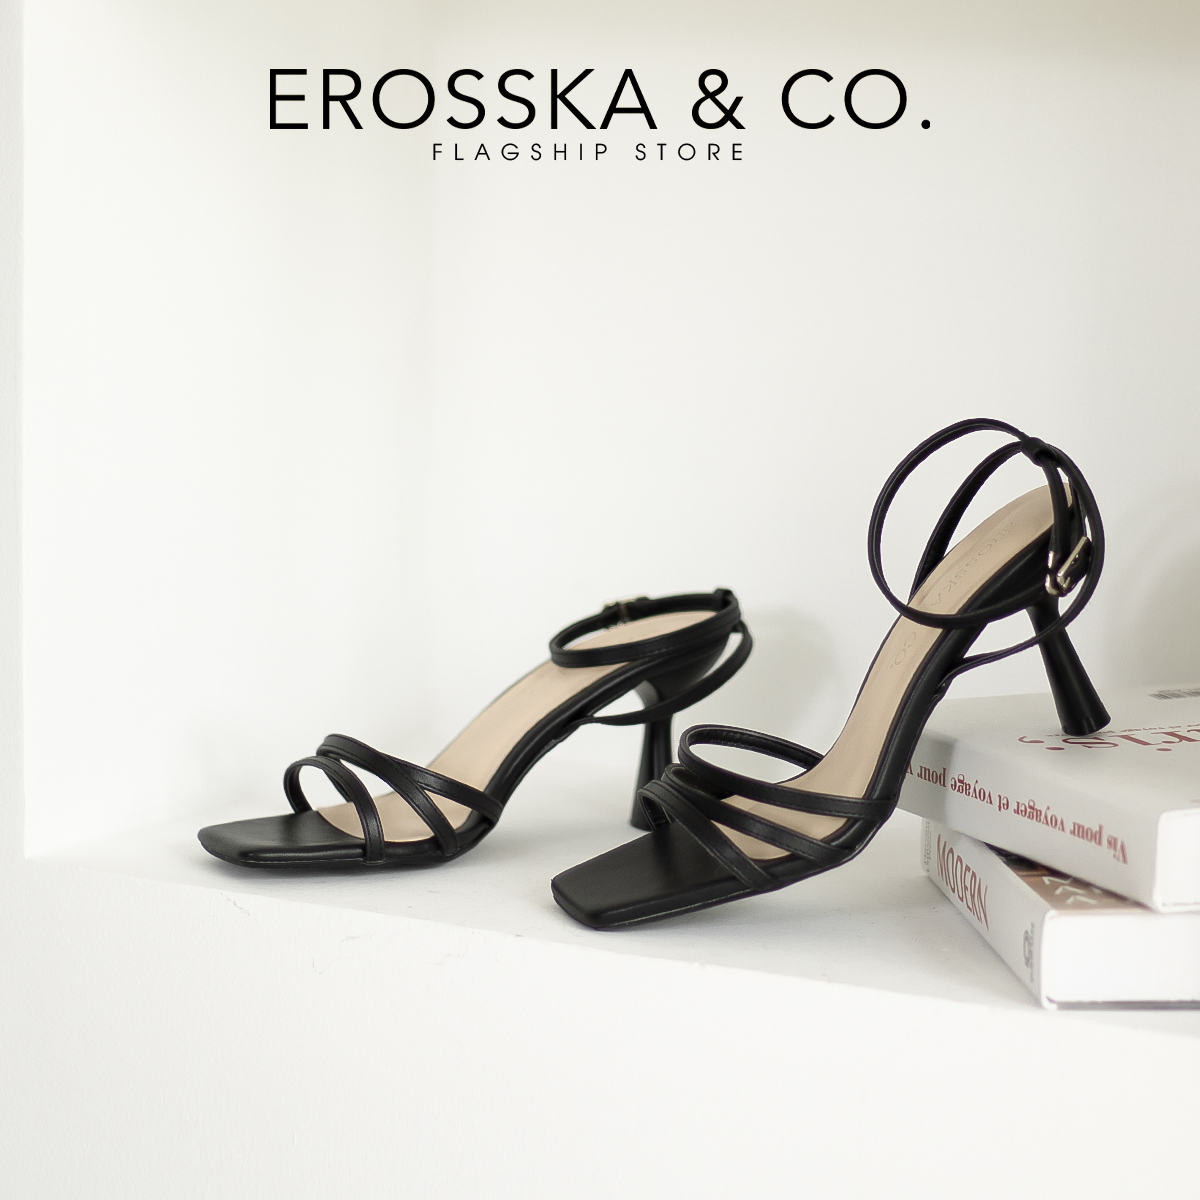 Erosska - Giày cao gót nhọn mũi hở phối dây quai mảnh cao 7cm màu nâu - EB052